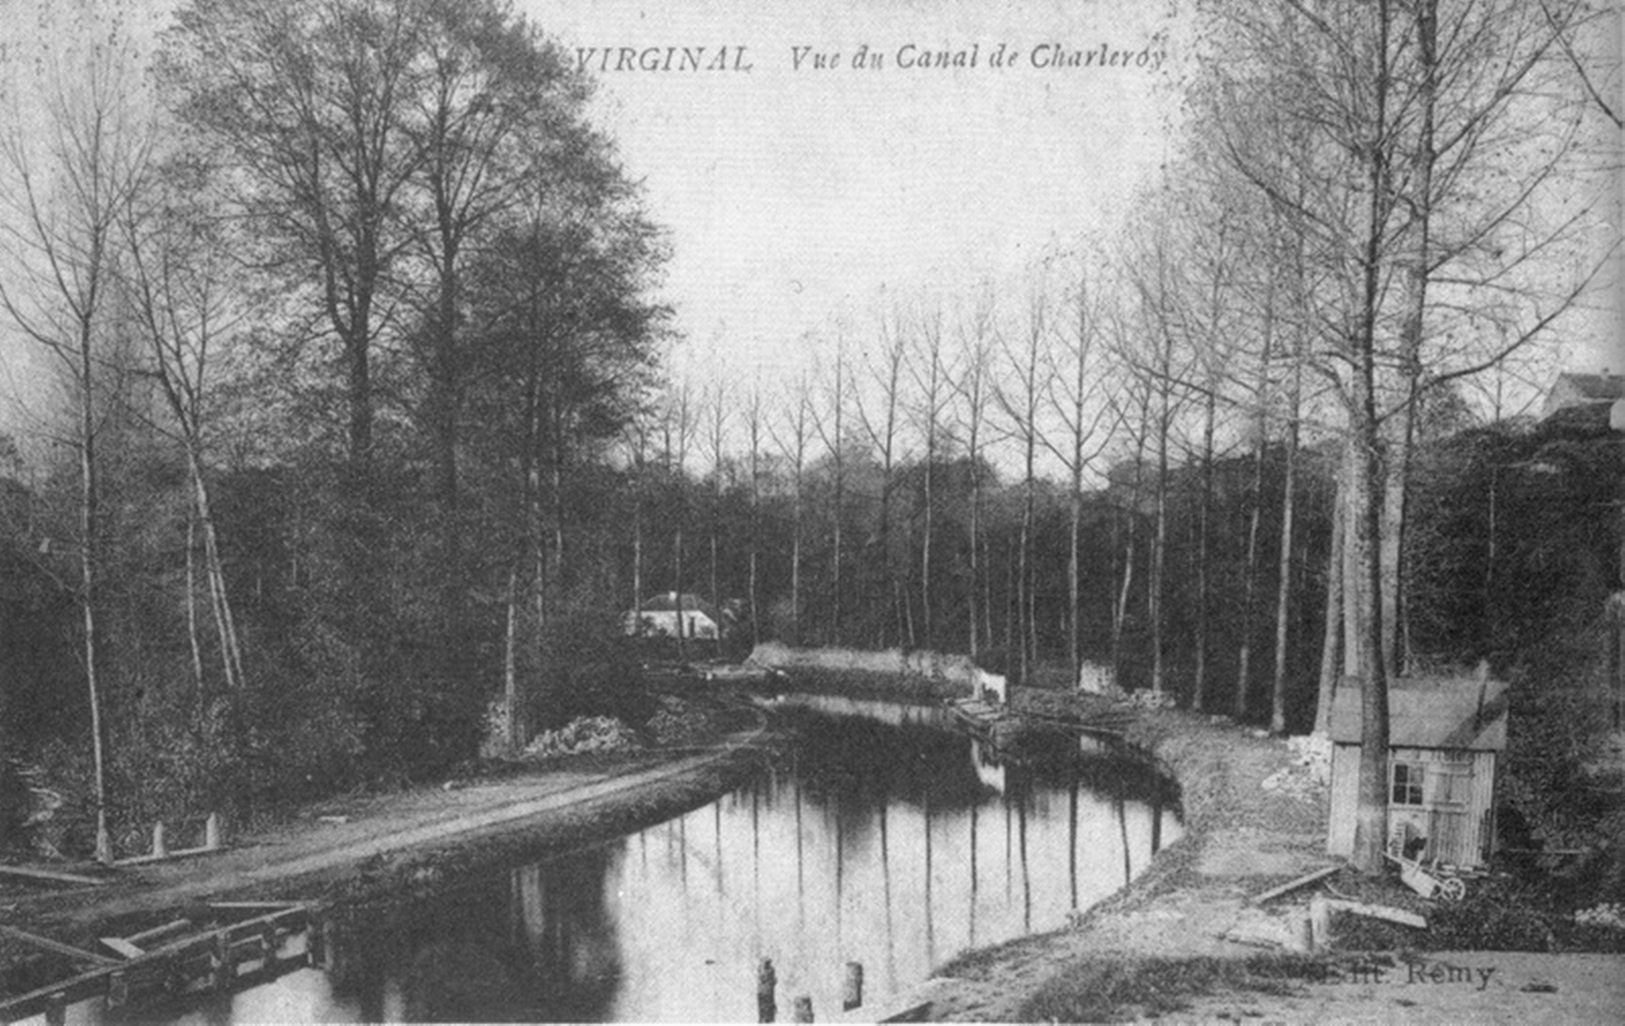 Autrefois - Virginal-_Vieux_canal_-10